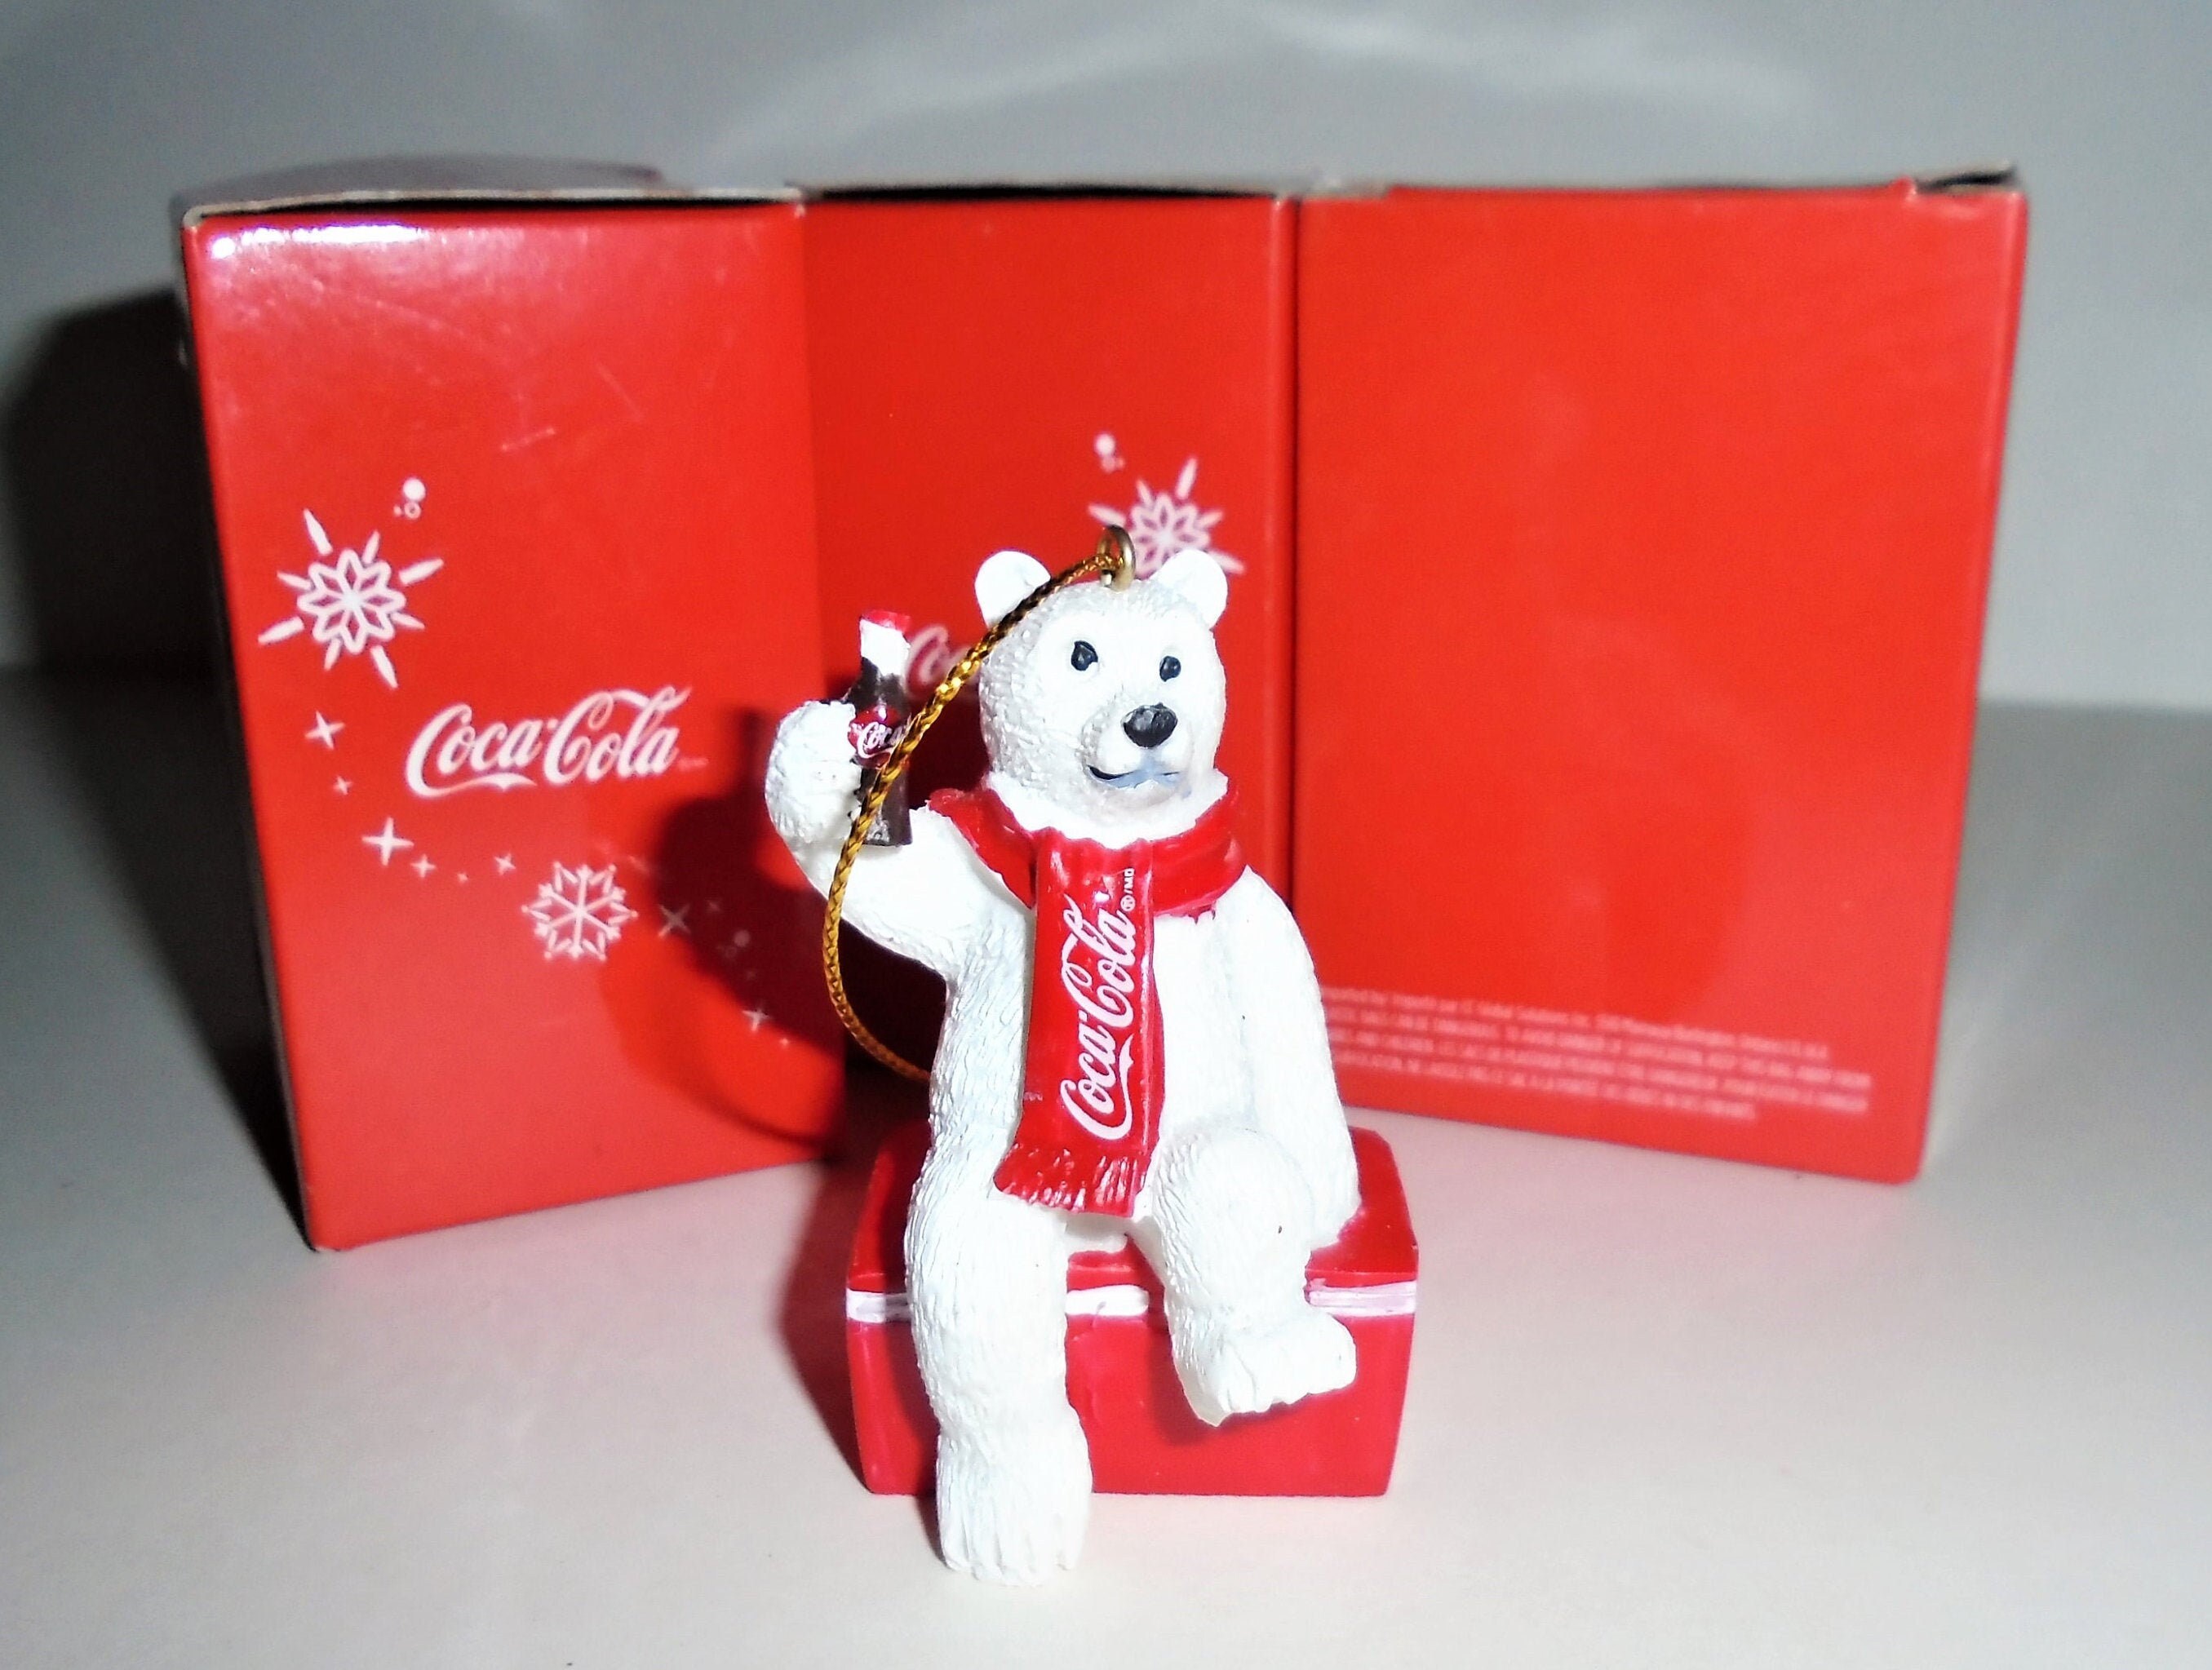 Fun Vintage Bear Holiday Bear Tree Trim The Coca-Cola Polar Bear Ornament Collectible Coca Cola Bear Ornament Vintage Ornament from 1997